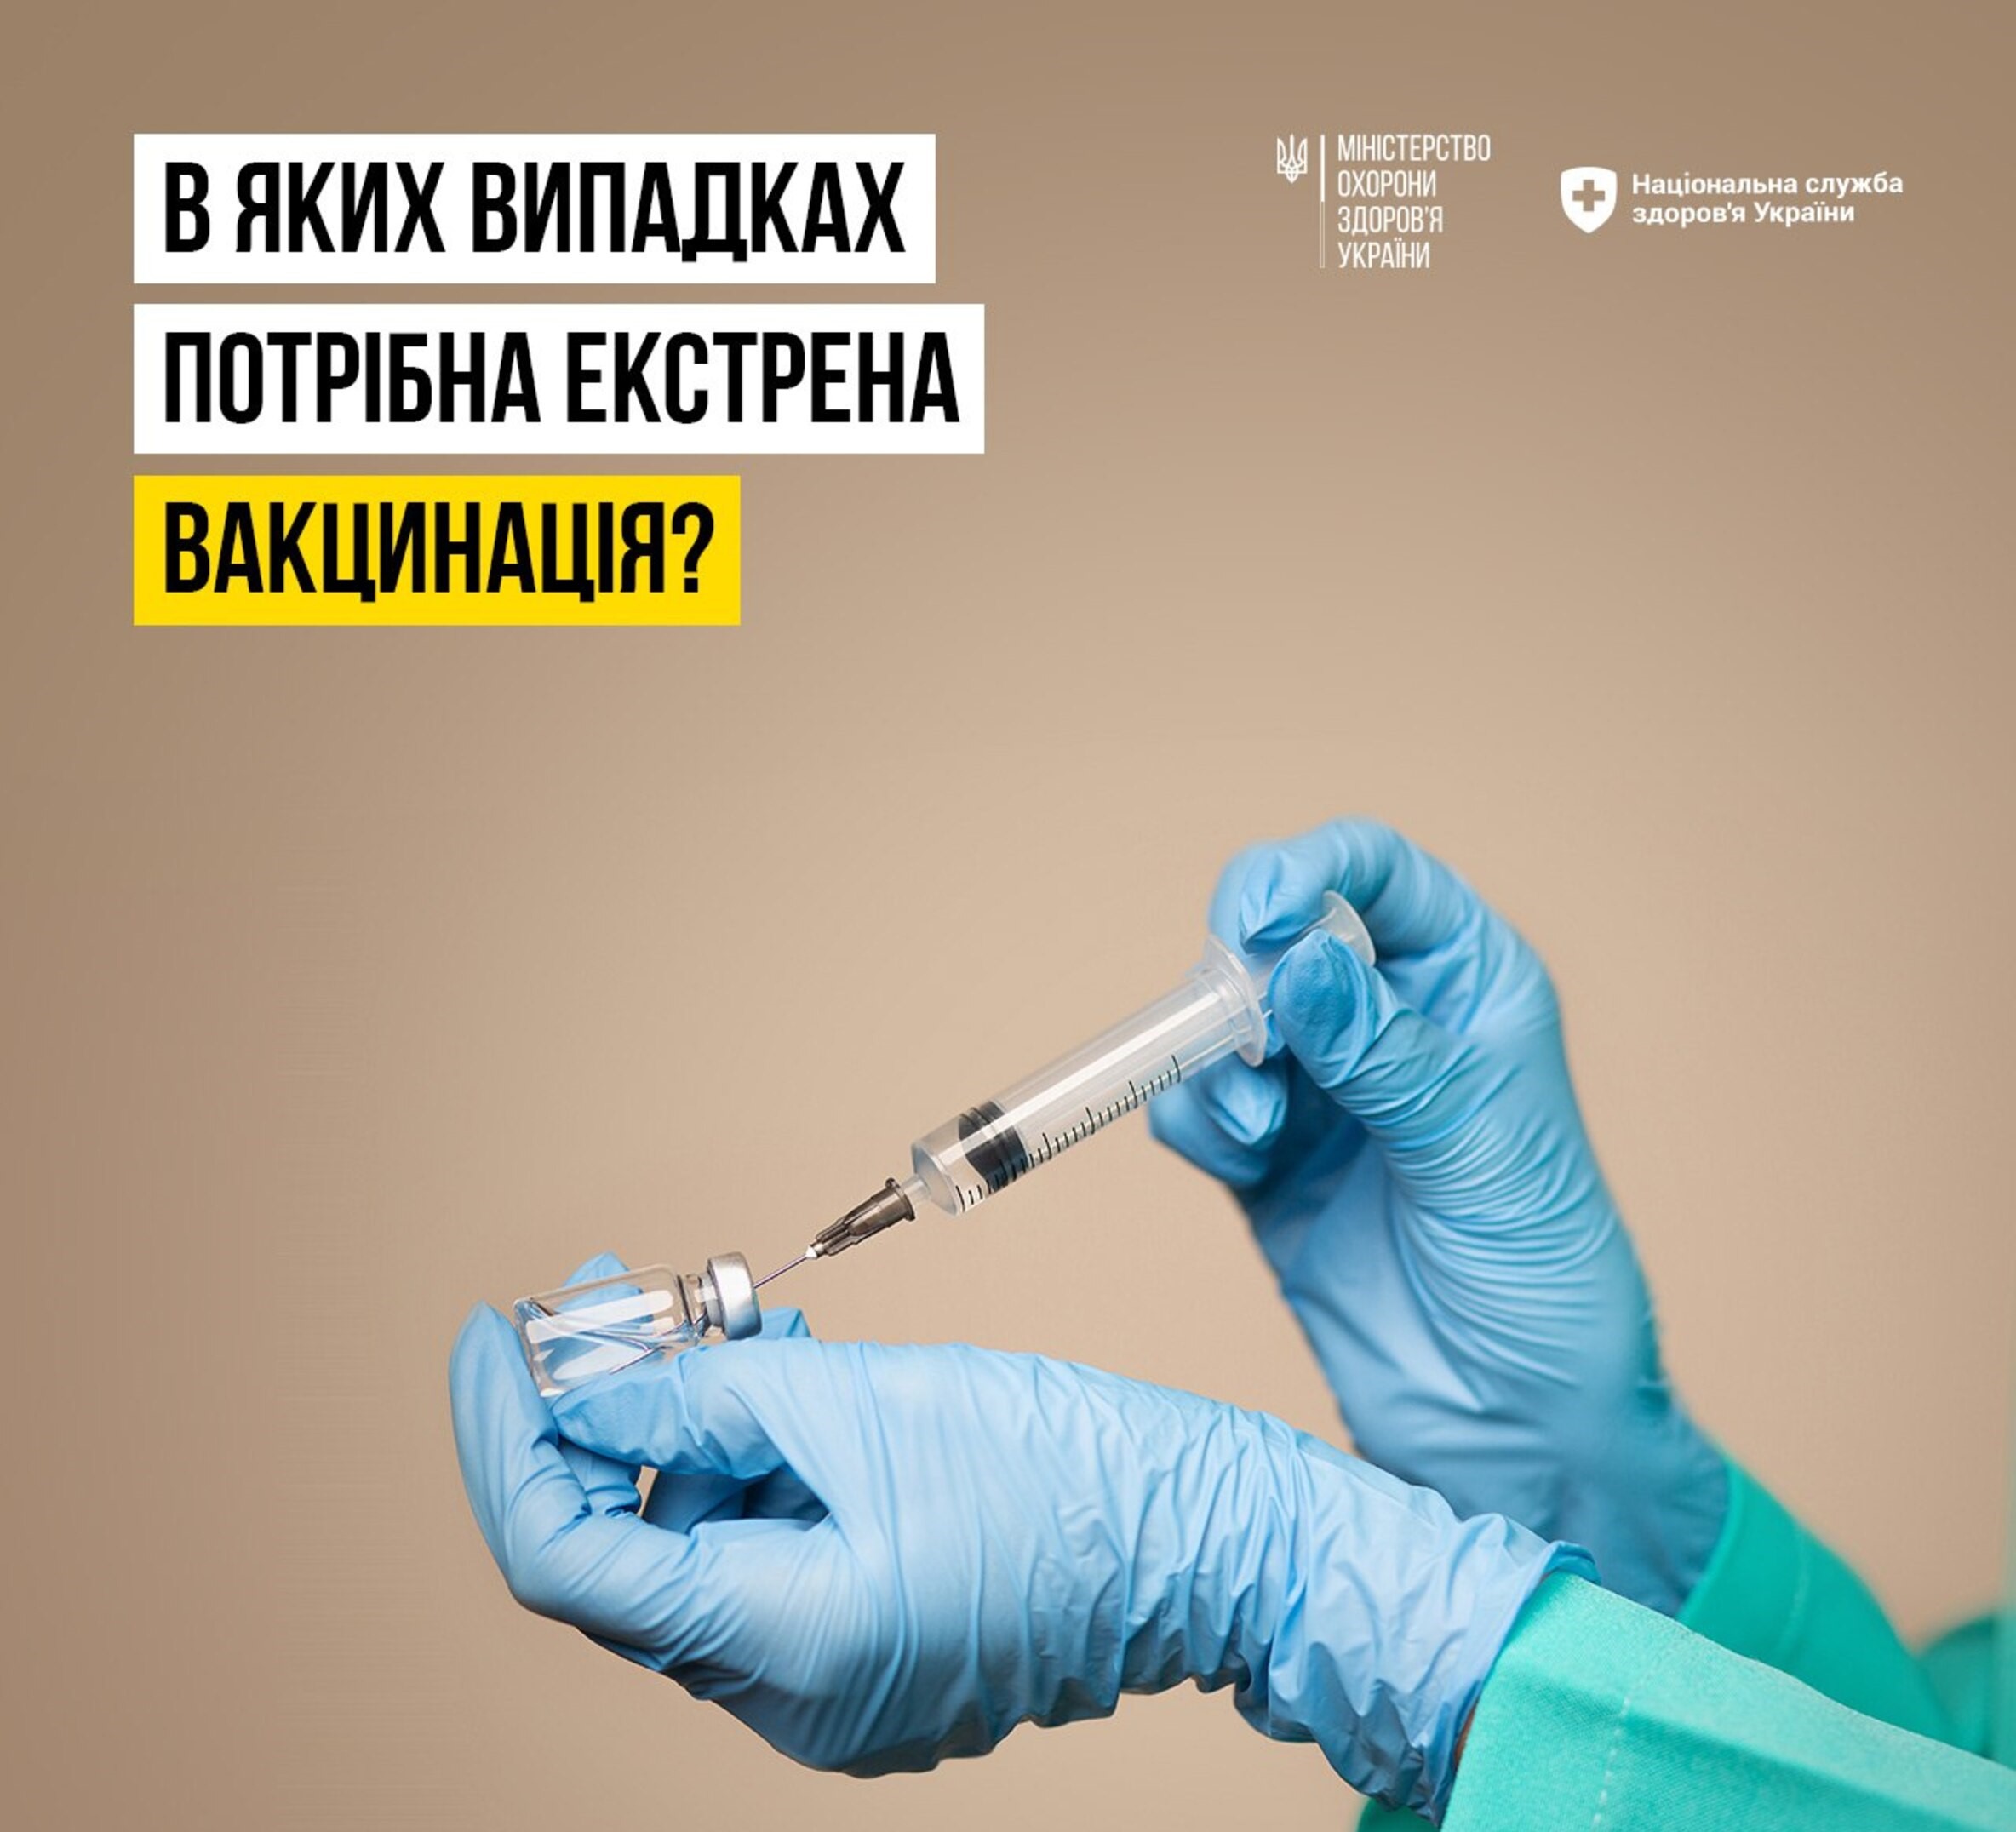 зображення рук в медичних рукавичках, які тримають шприц та напису "В яких випадках потрібна екстрена вакцинація?"